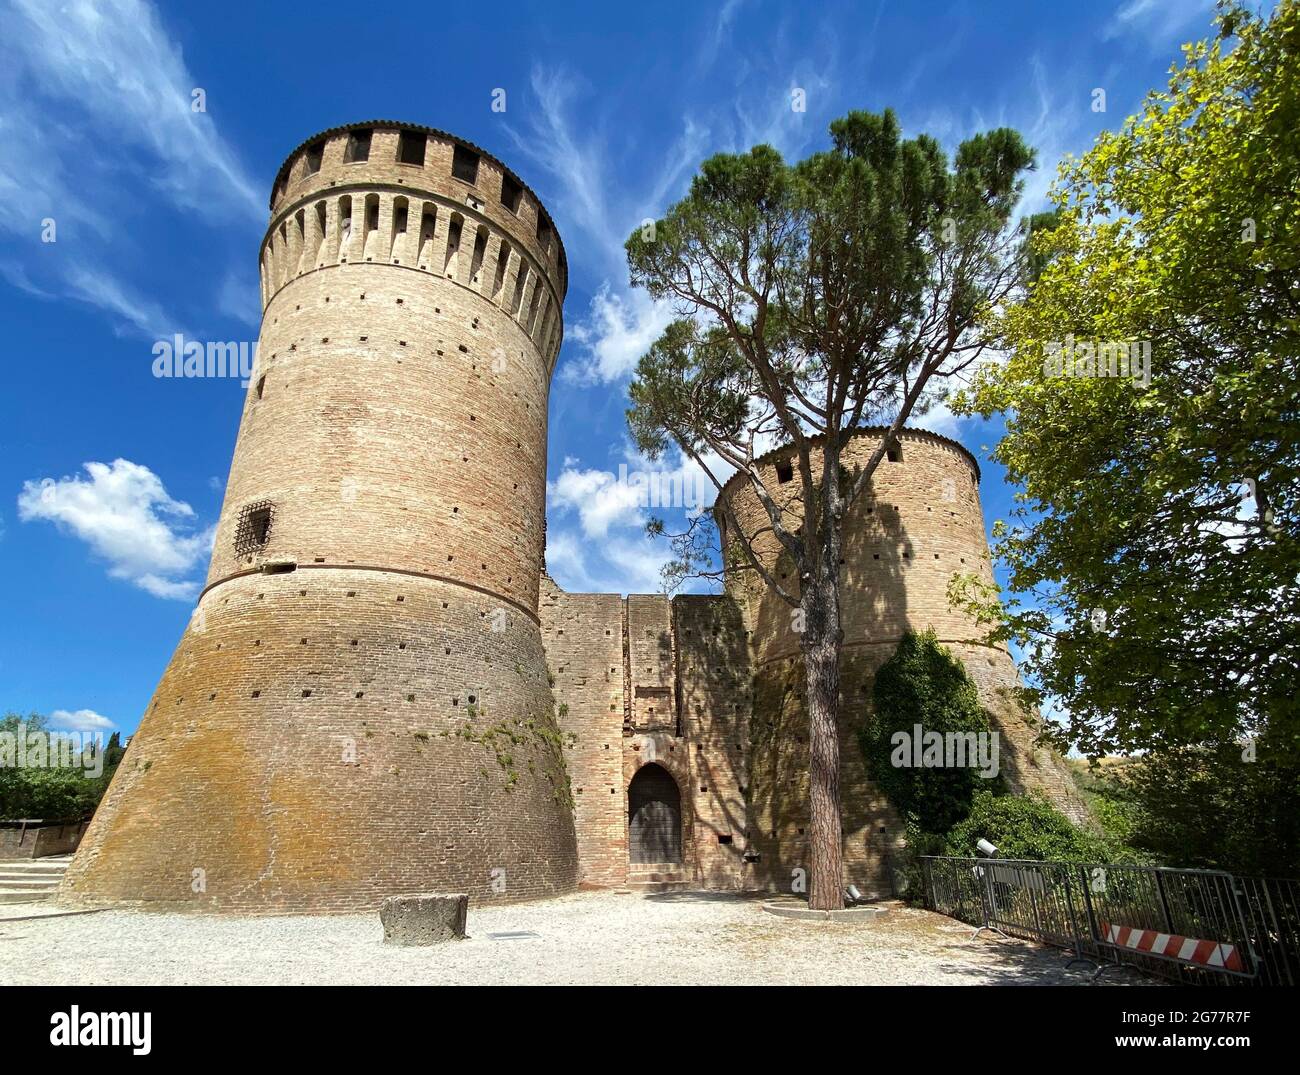 Main entrance of Rocca Manfrediana di Brisighella (Fortress of Brisighella). Ravenna, Italy Stock Photo